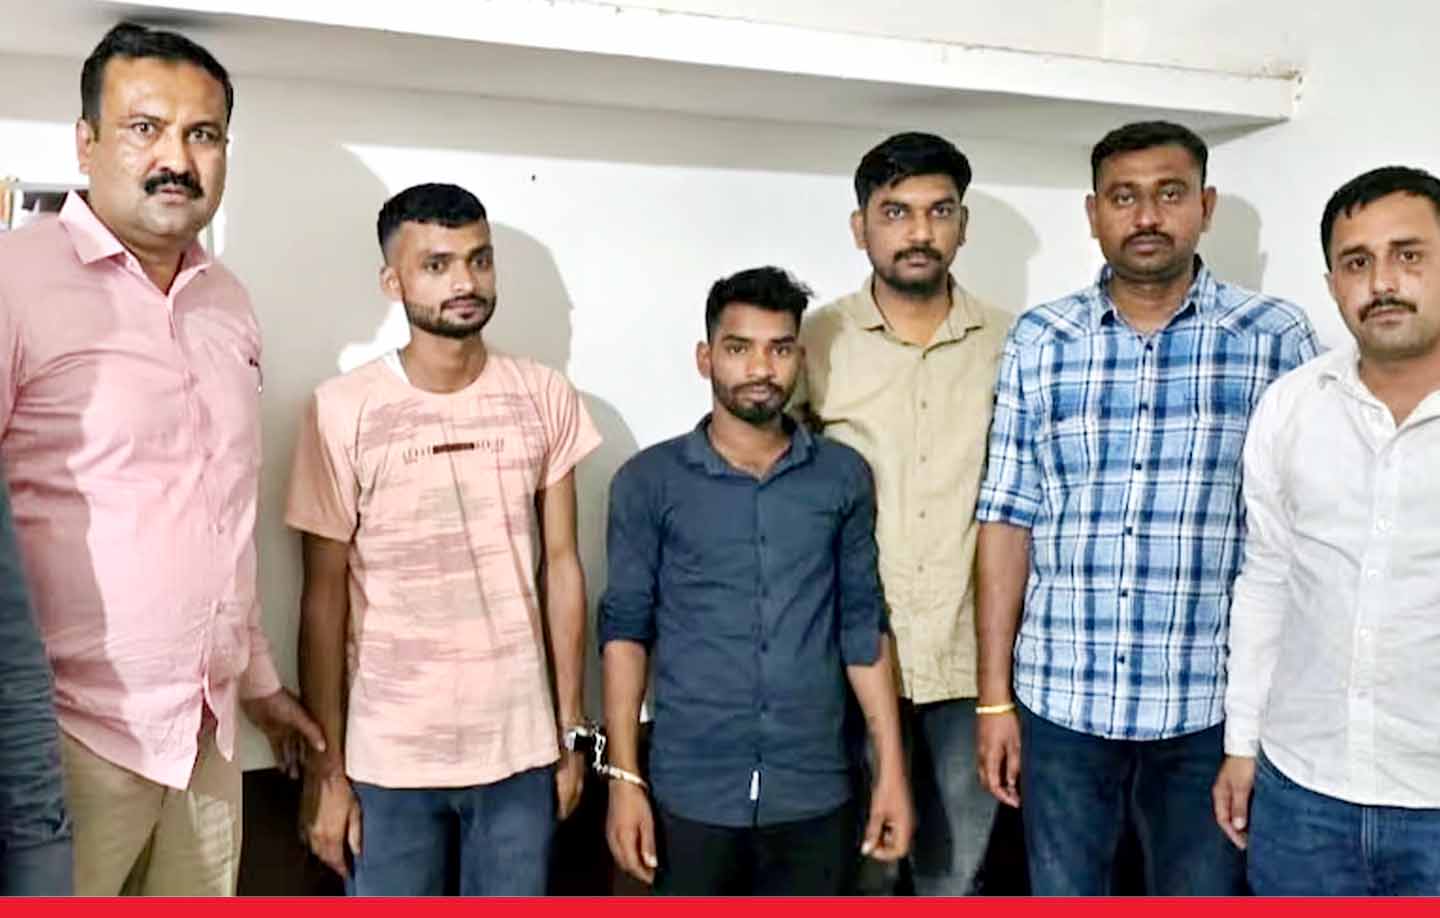 सलमान के घर के बाहर फायरिंग करने वाले आरोपियों को मुंबई क्राइम ब्रांच की टीम ने किया गिरफ्तार